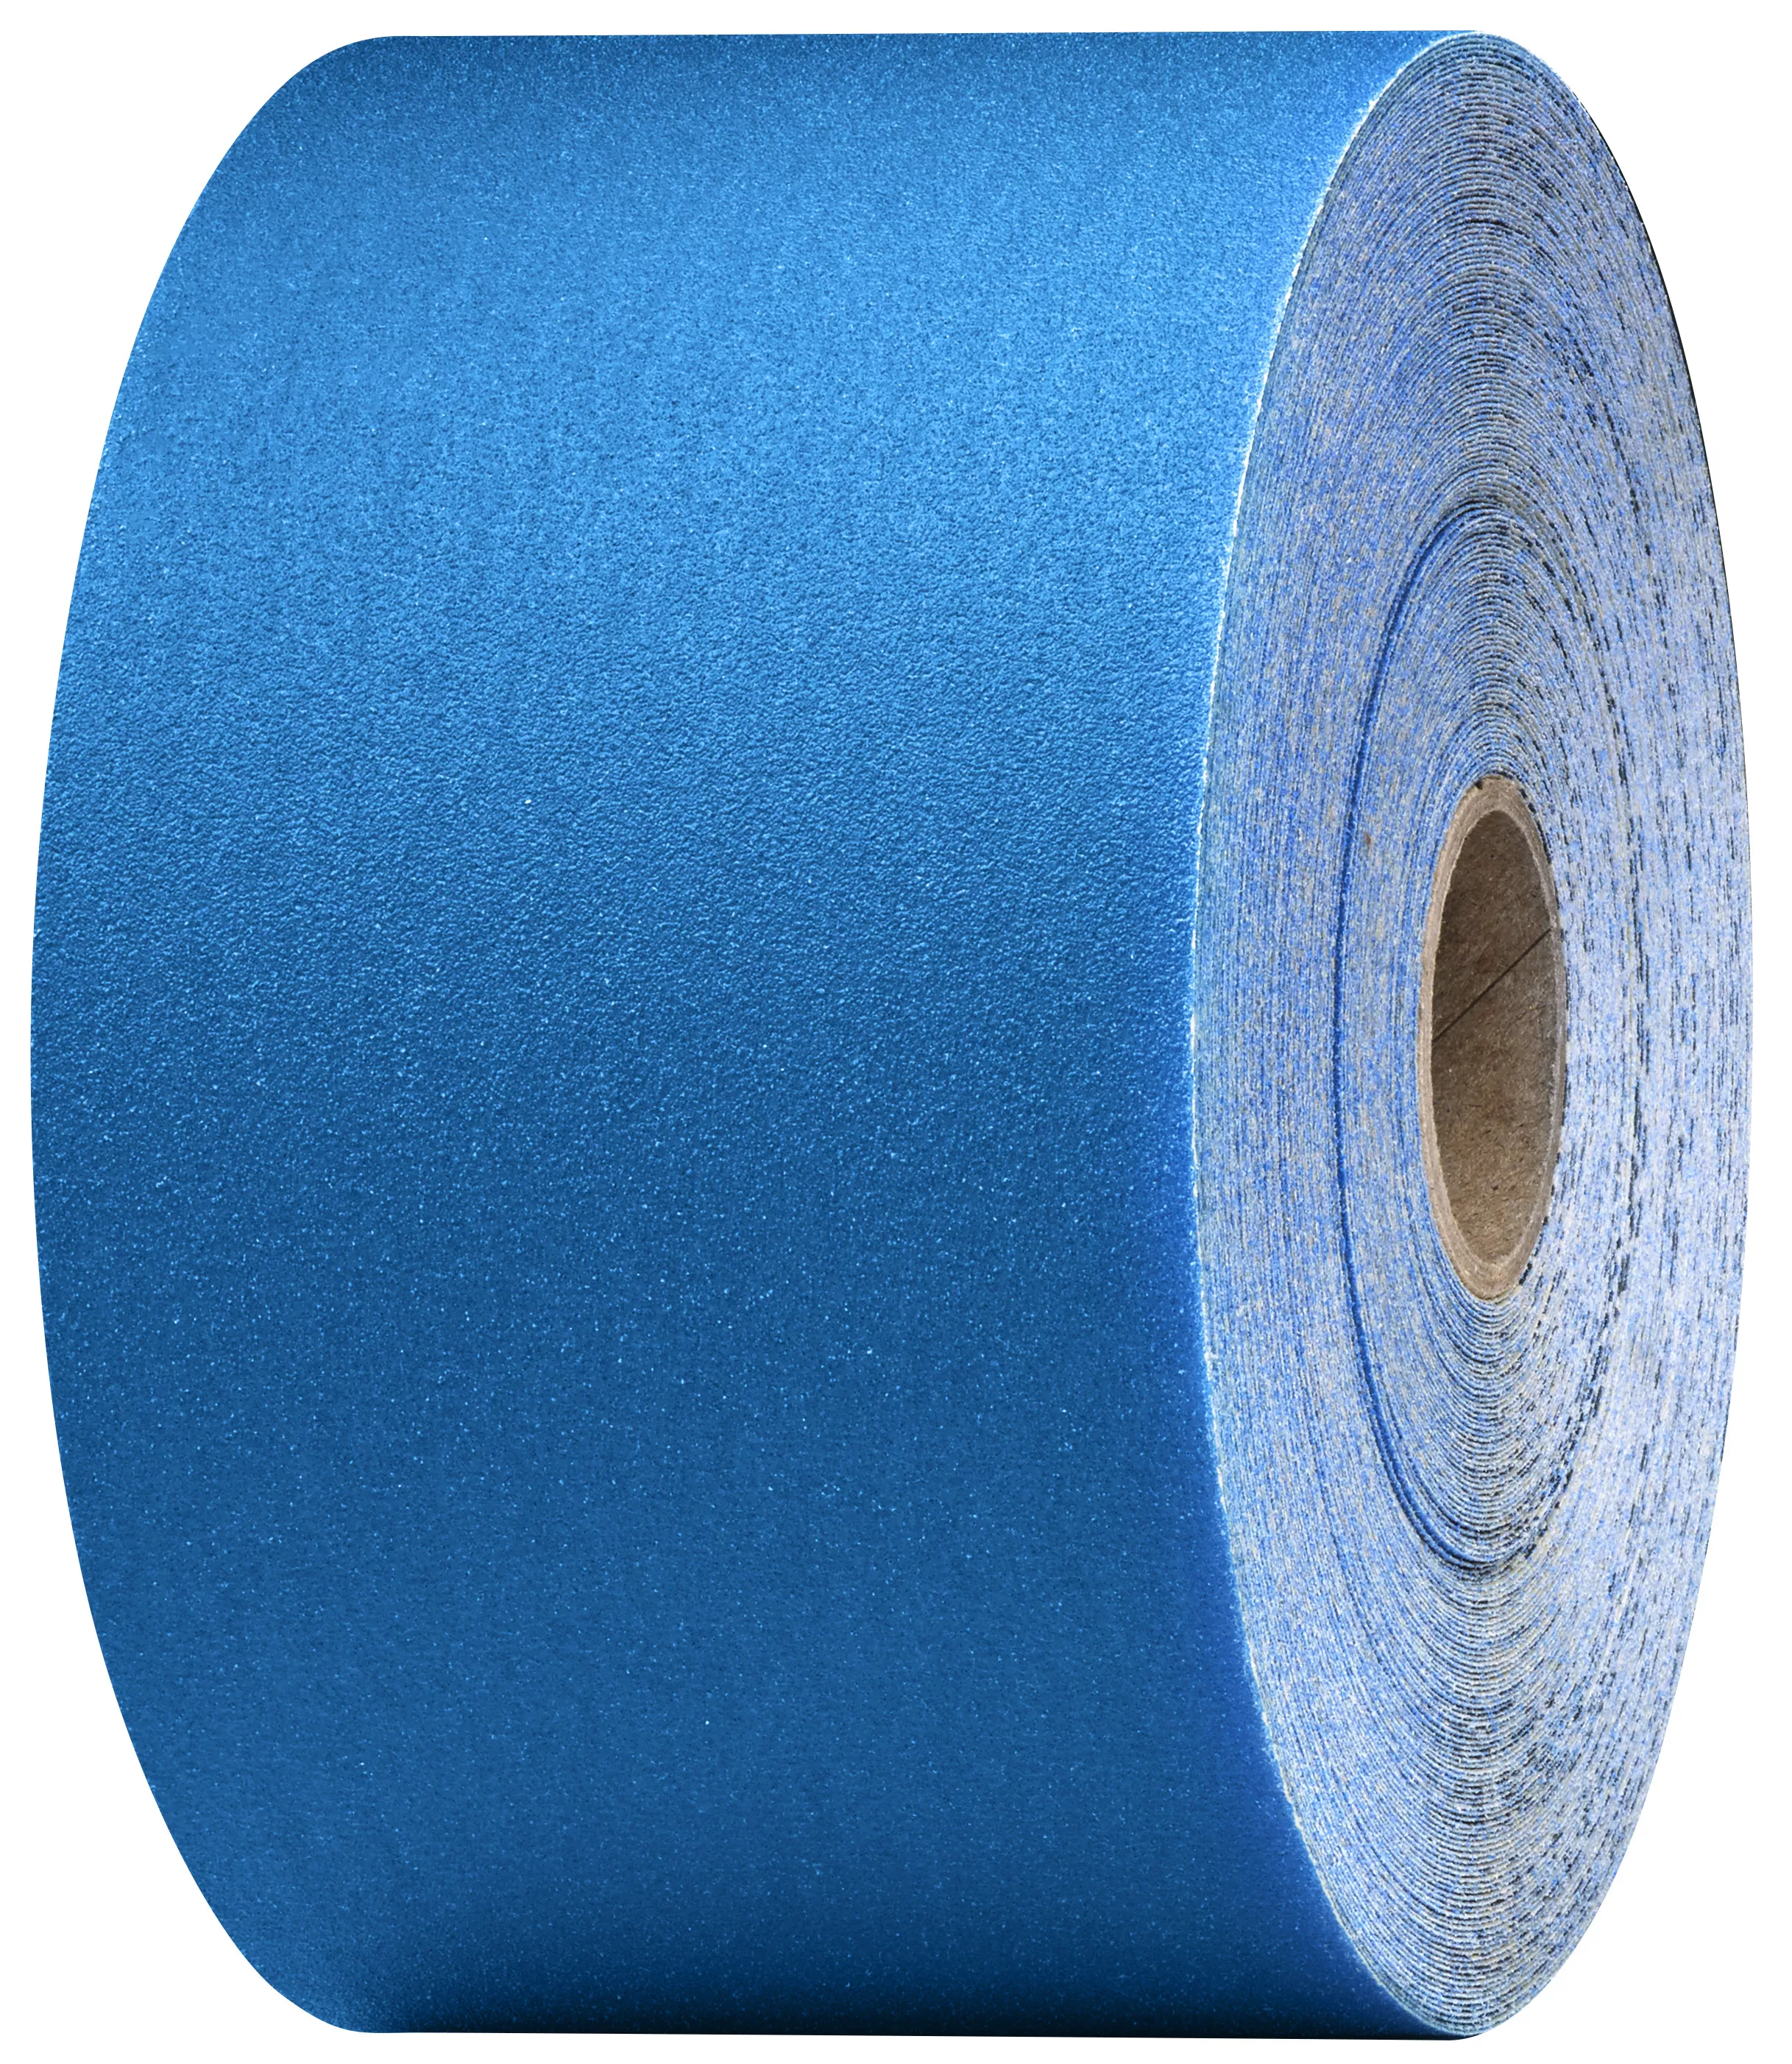 3M™ Stikit™ Blue Abrasive Sheet Roll, 36219, 120, 2-3/4 in x 30 yd, 5
rolls per case